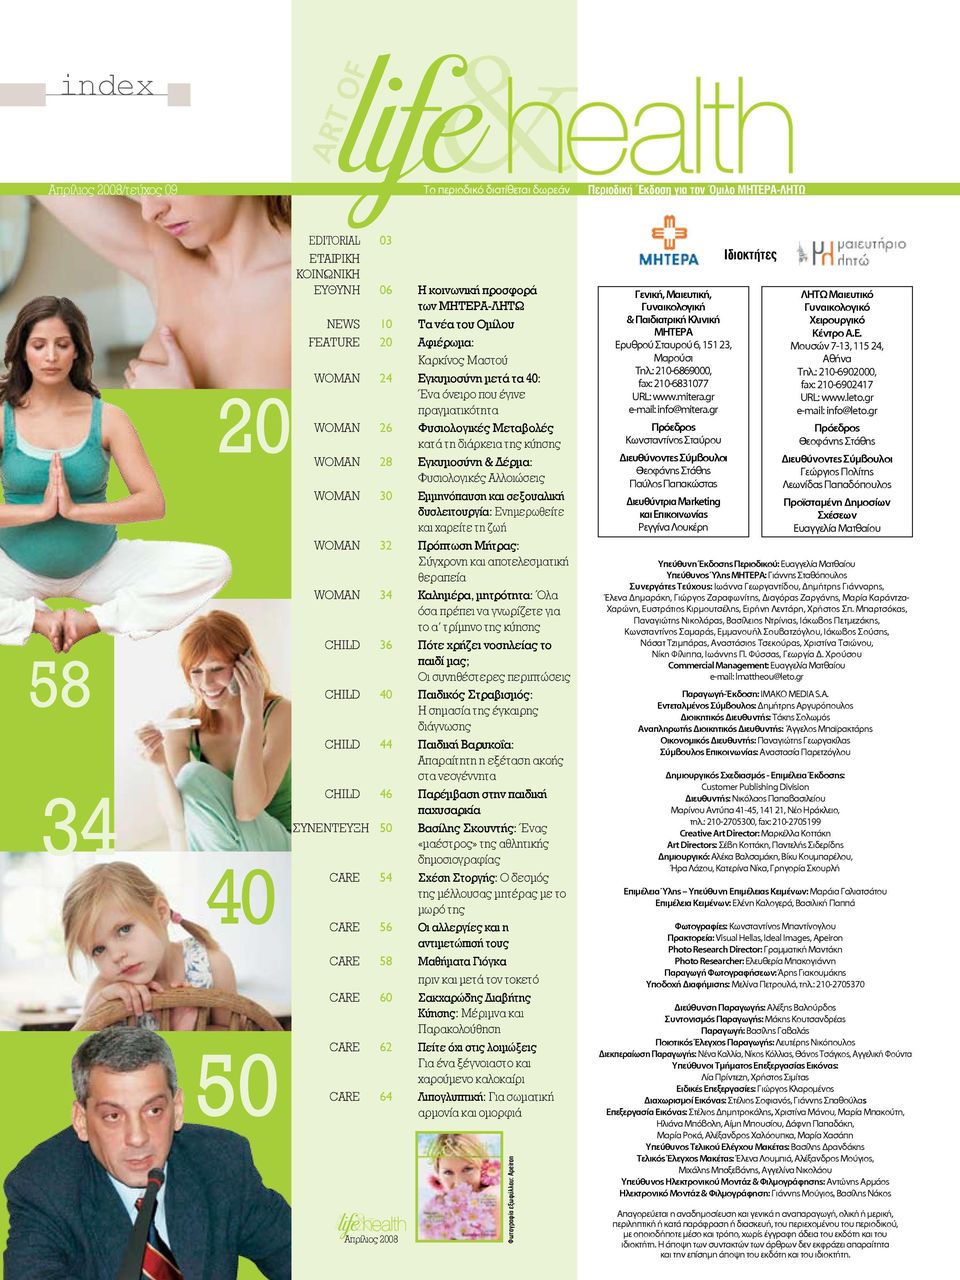 28 Εγκυμοσύνη & Δέρμα: Φυσιολογικές Αλλοιώσεις WOMAN 30 Εμμηνόπαυση και σεξουαλική δυσλειτουργία: Ενημερωθείτε και χαρείτε τη ζωή WOMAN 32 Πρόπτωση Μήτρας: Σύγχρονη και αποτελεσματική θεραπεία WOMAN